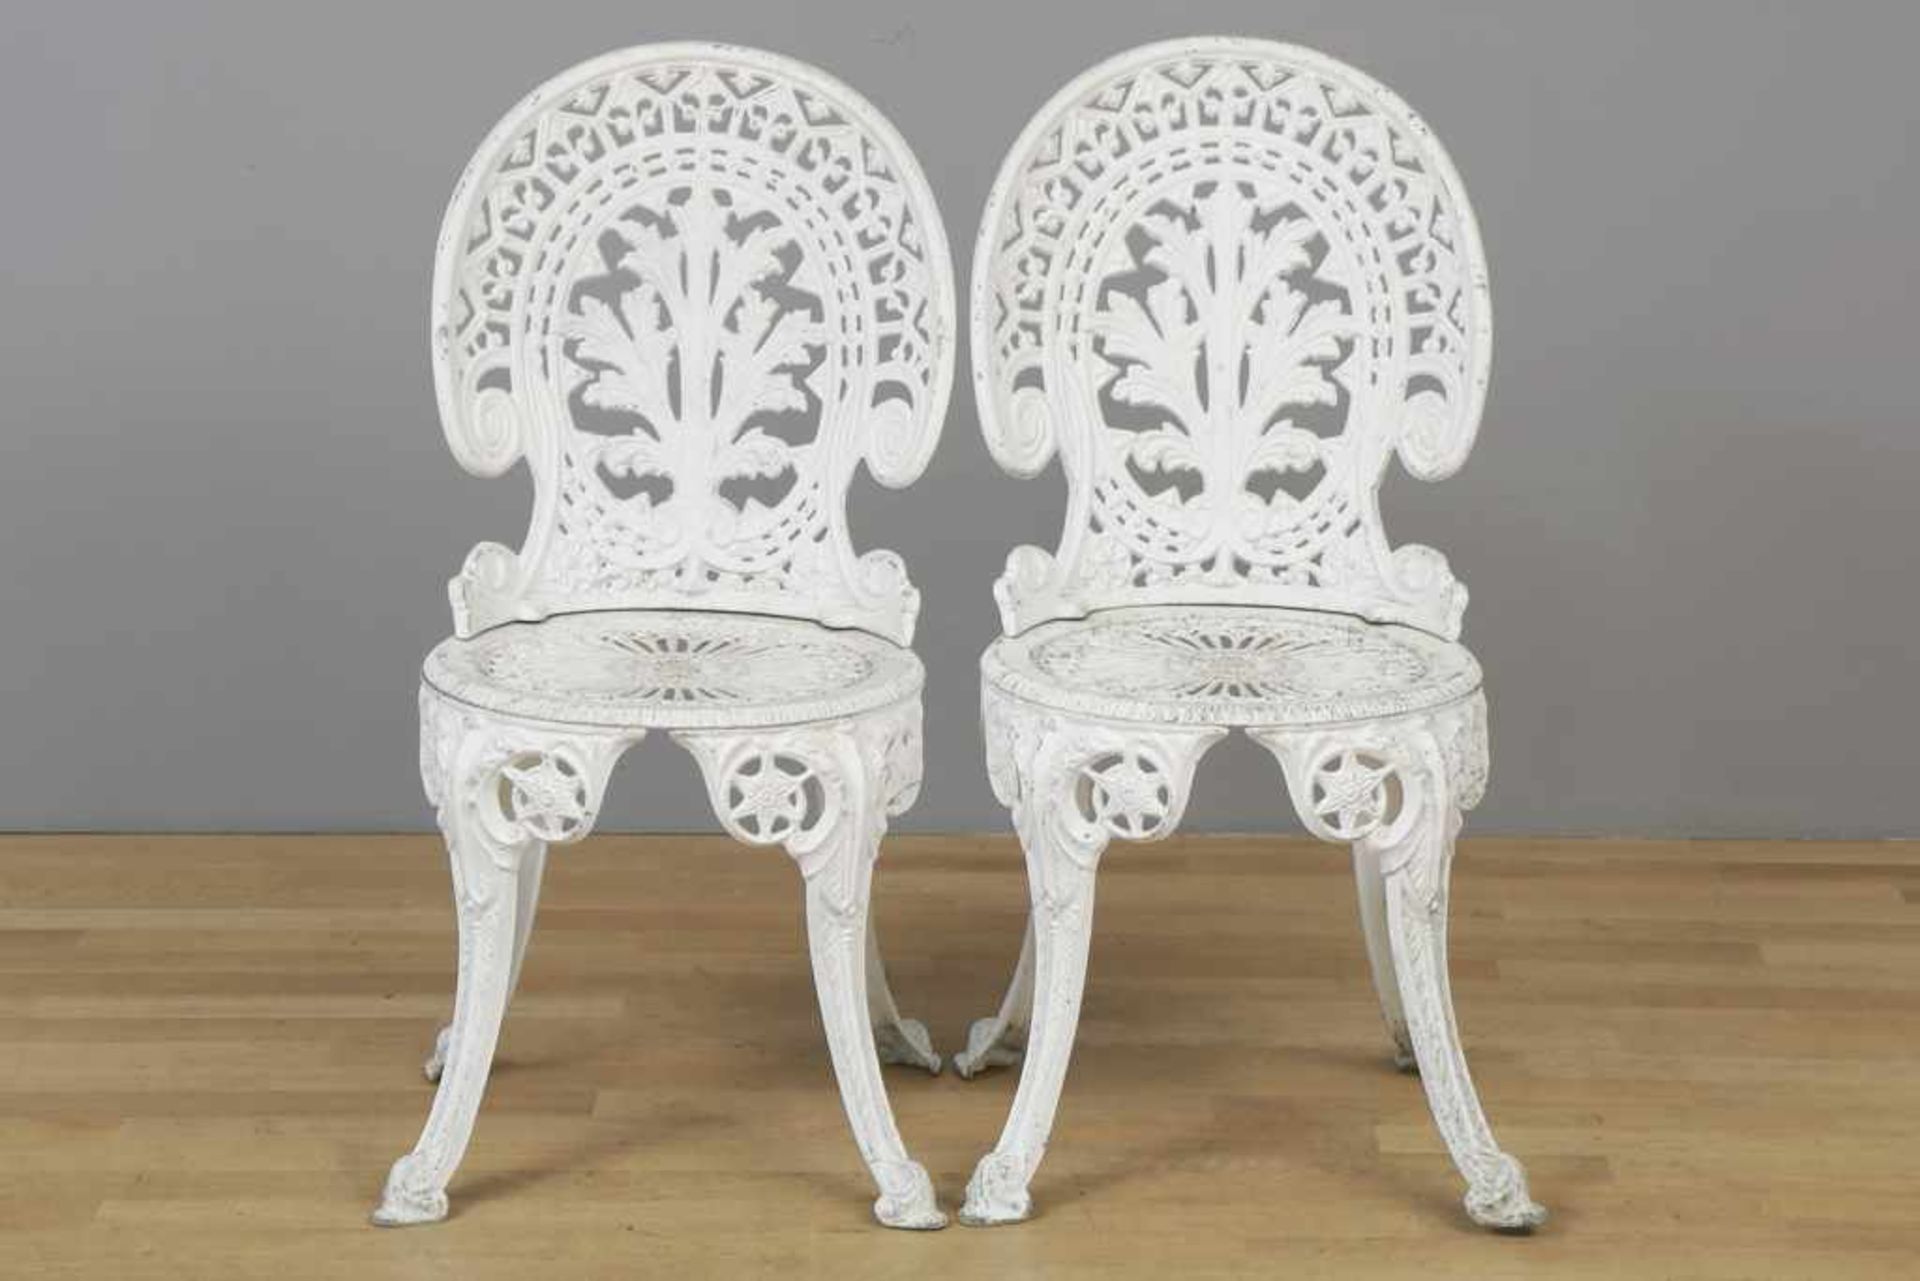 Paar Gartenstühle im viktorianischen Stil Metallguss, weiß lackiert, Medaillonrücken und runde - Bild 3 aus 3